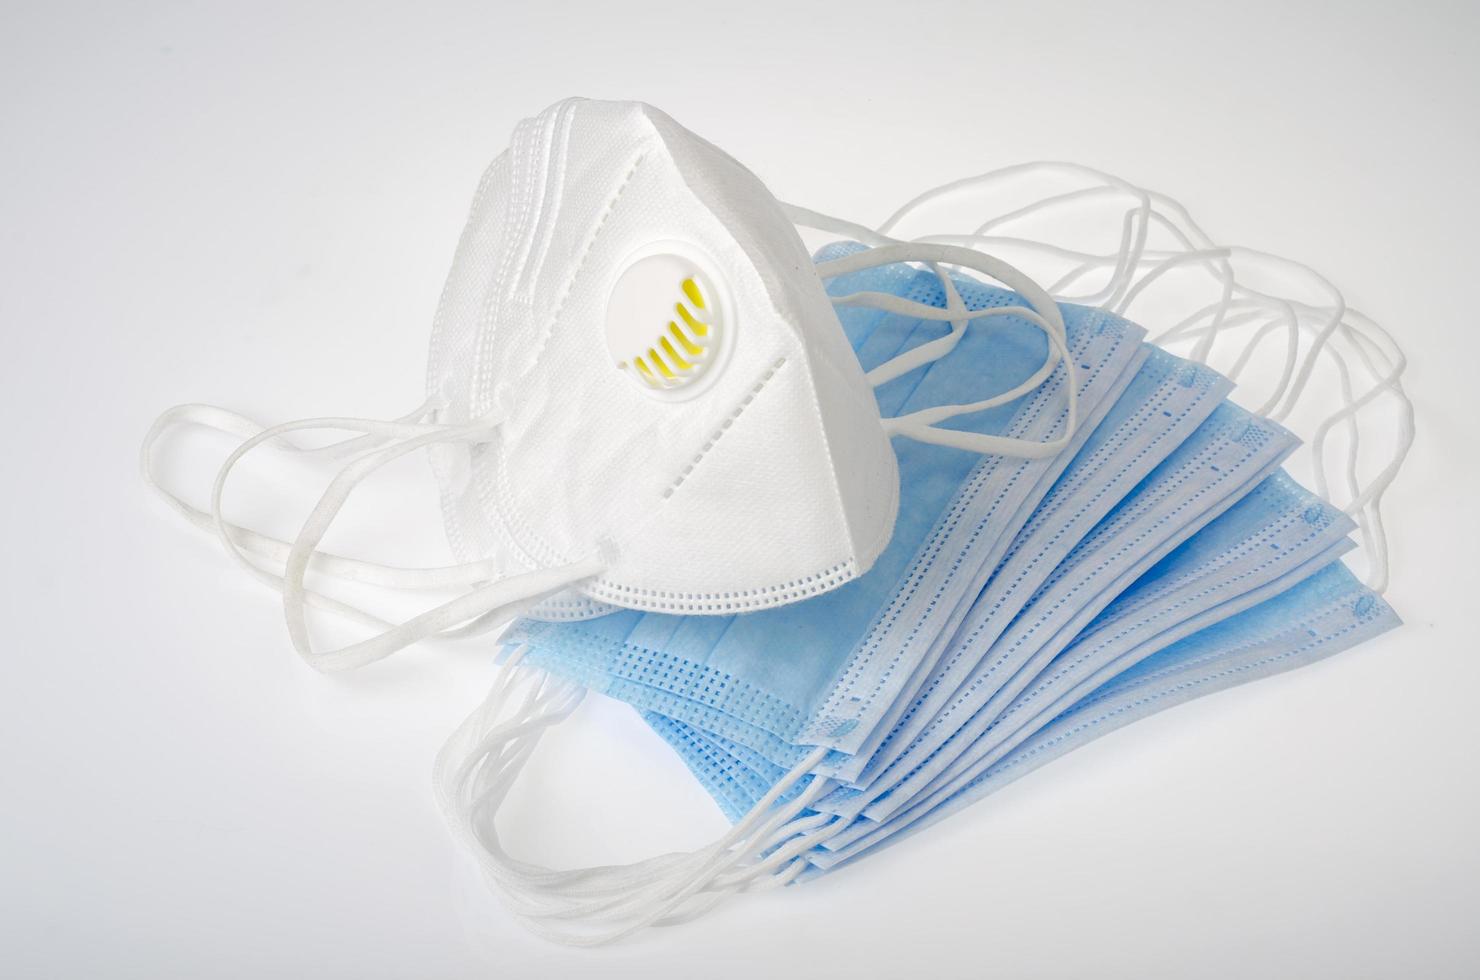 masques médicaux jetables bleus et respirateurs blancs - protection contre le coronavirus photo